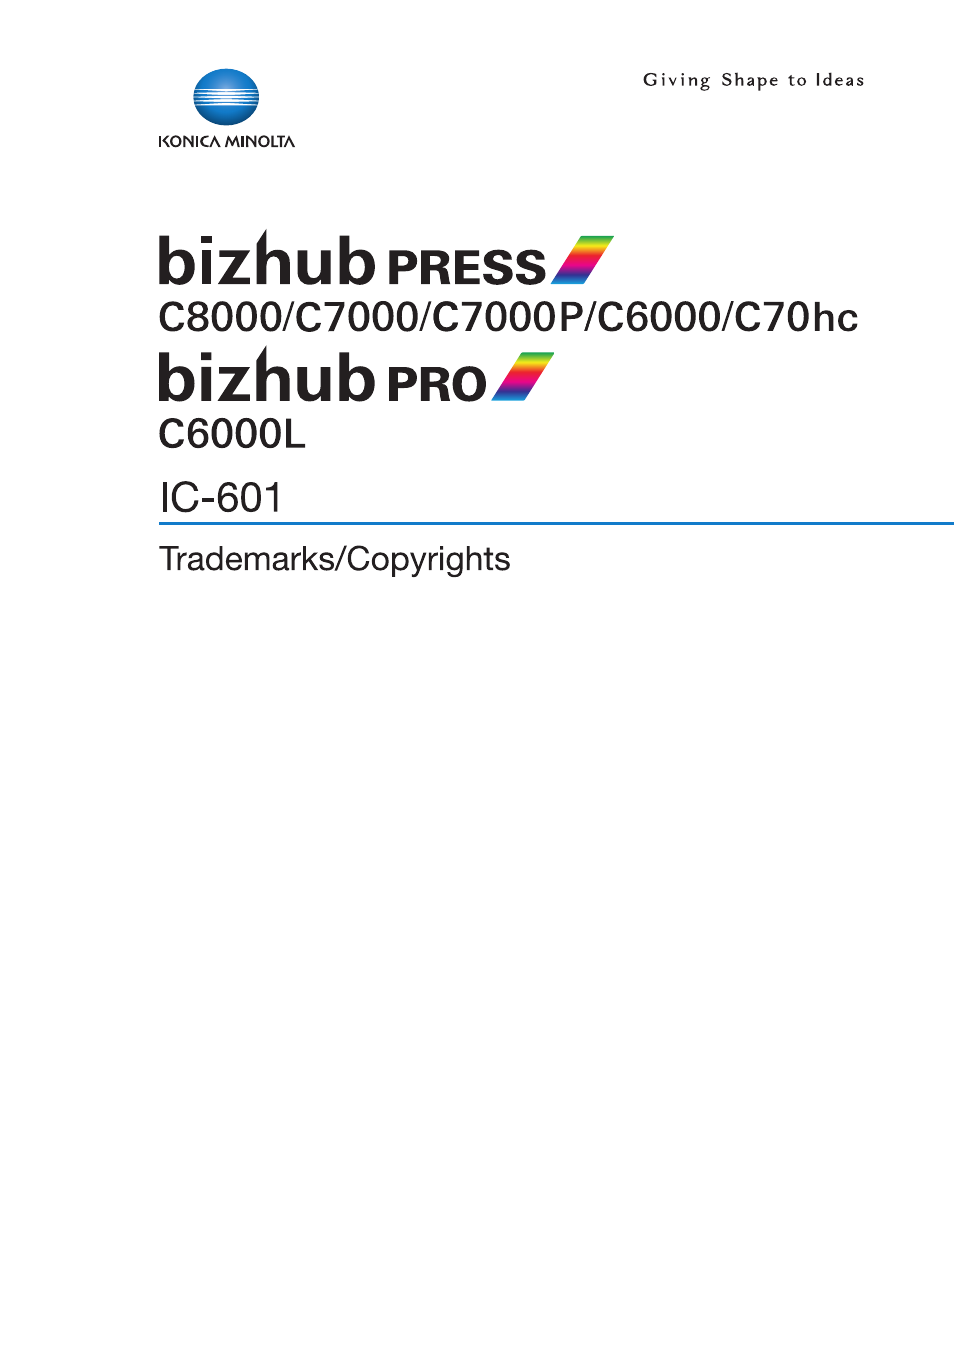 Konica Minolta bizhub PRESS C7000P User Manual | 138 pages